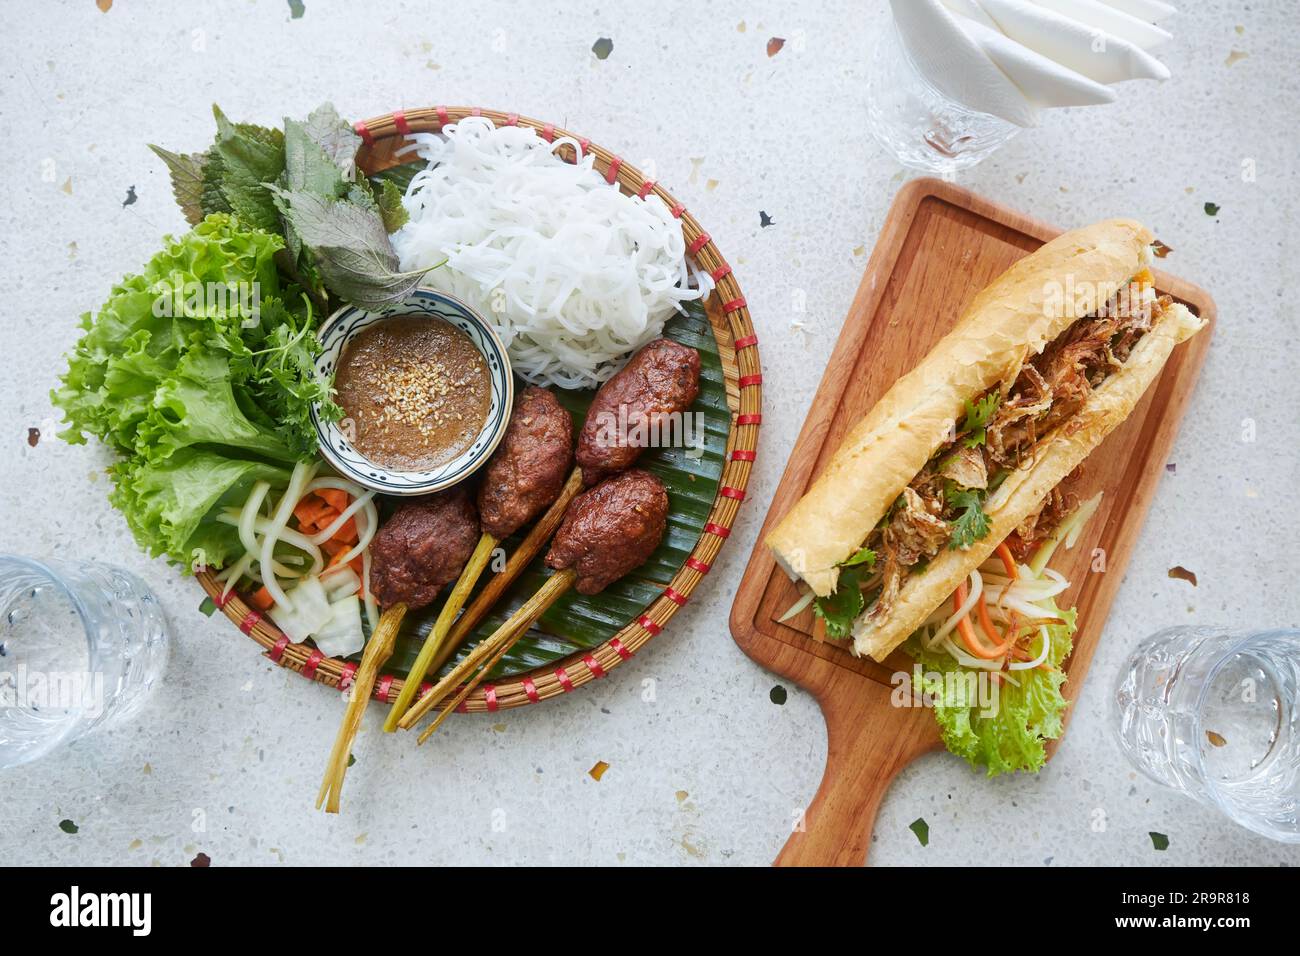 Geschmack von Vietnam. Traditionelle vietnamesische Speisen auf dem Tisch im Restaurant. Fleischbällchen, Nudeln, Salat und Banh mi Sandwich. Stockfoto